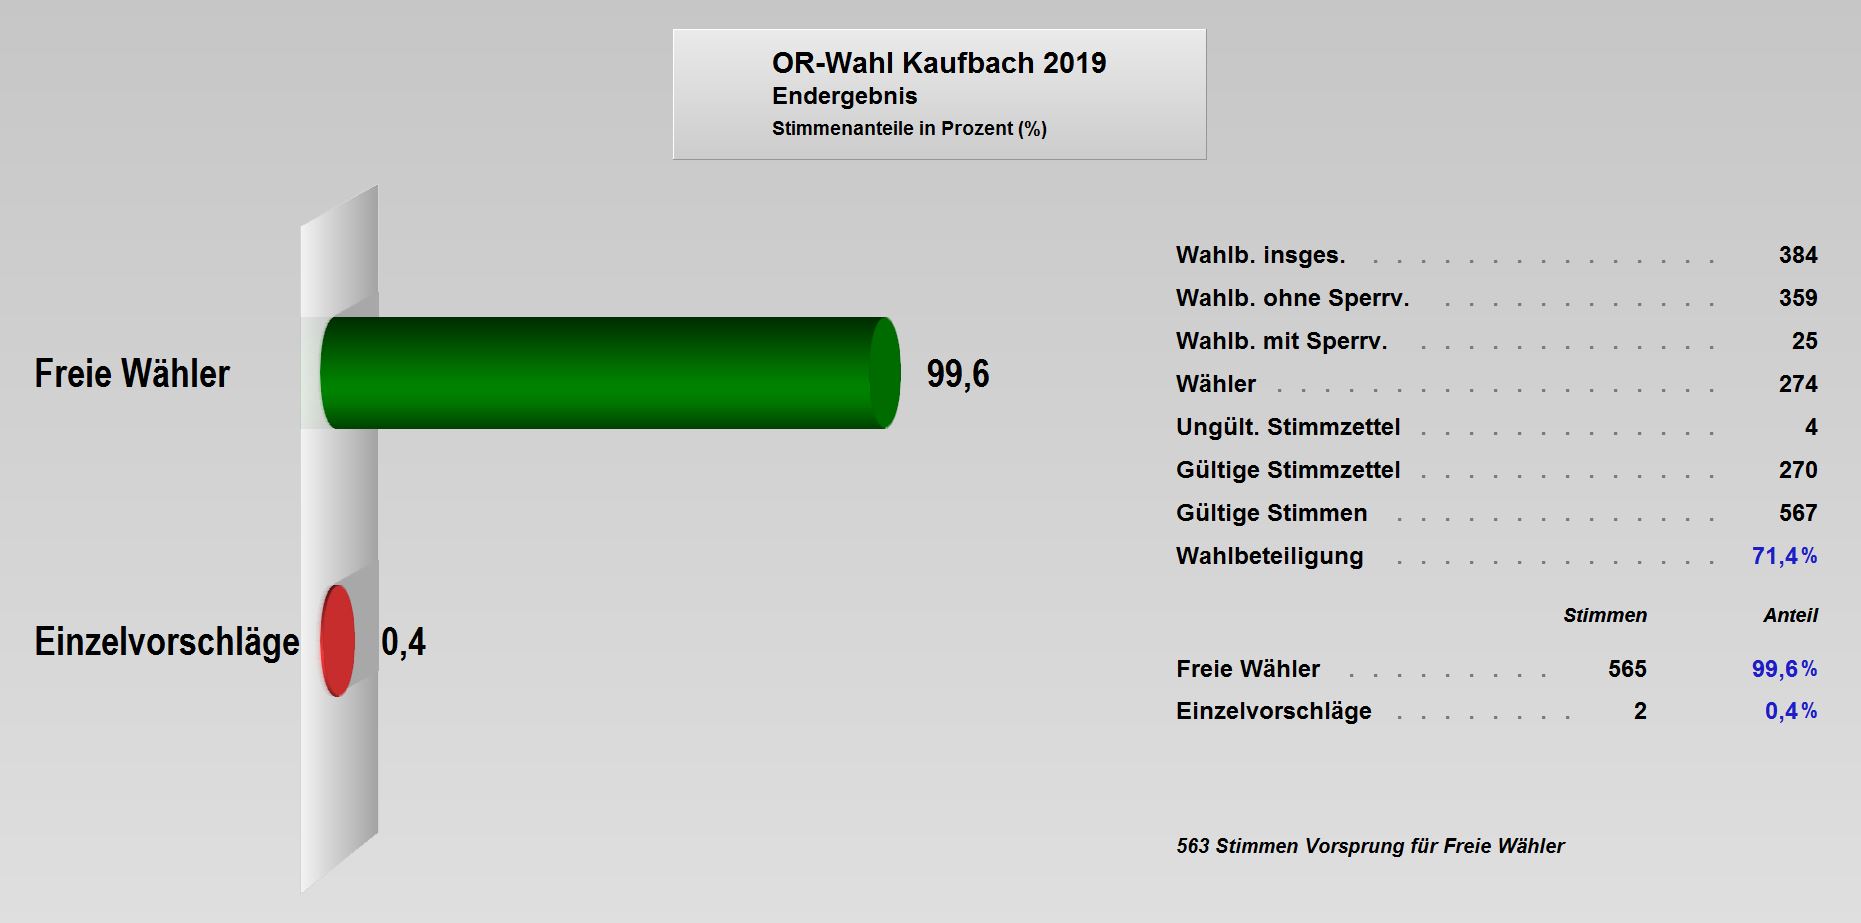 OR-Wahl_2019_Endergebnis_Kaufbach.JPG